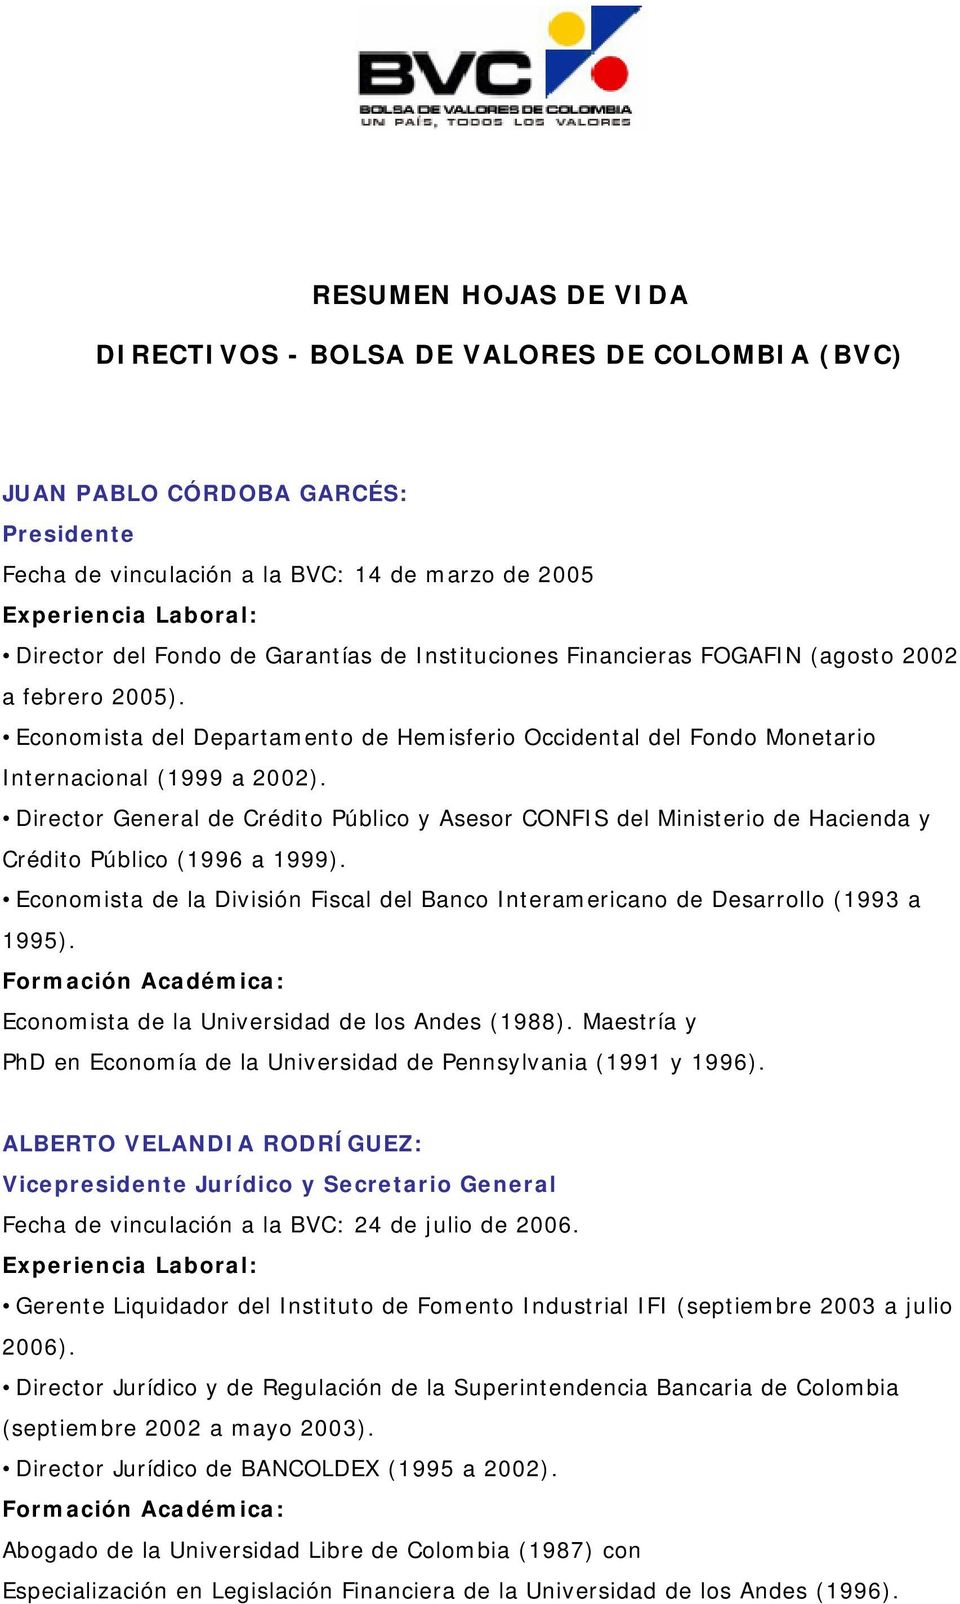 Director General de Crédito Público y Asesor CONFIS del Ministerio de Hacienda y Crédito Público (1996 a 1999). Economista de la División Fiscal del Banco Interamericano de Desarrollo (1993 a 1995).